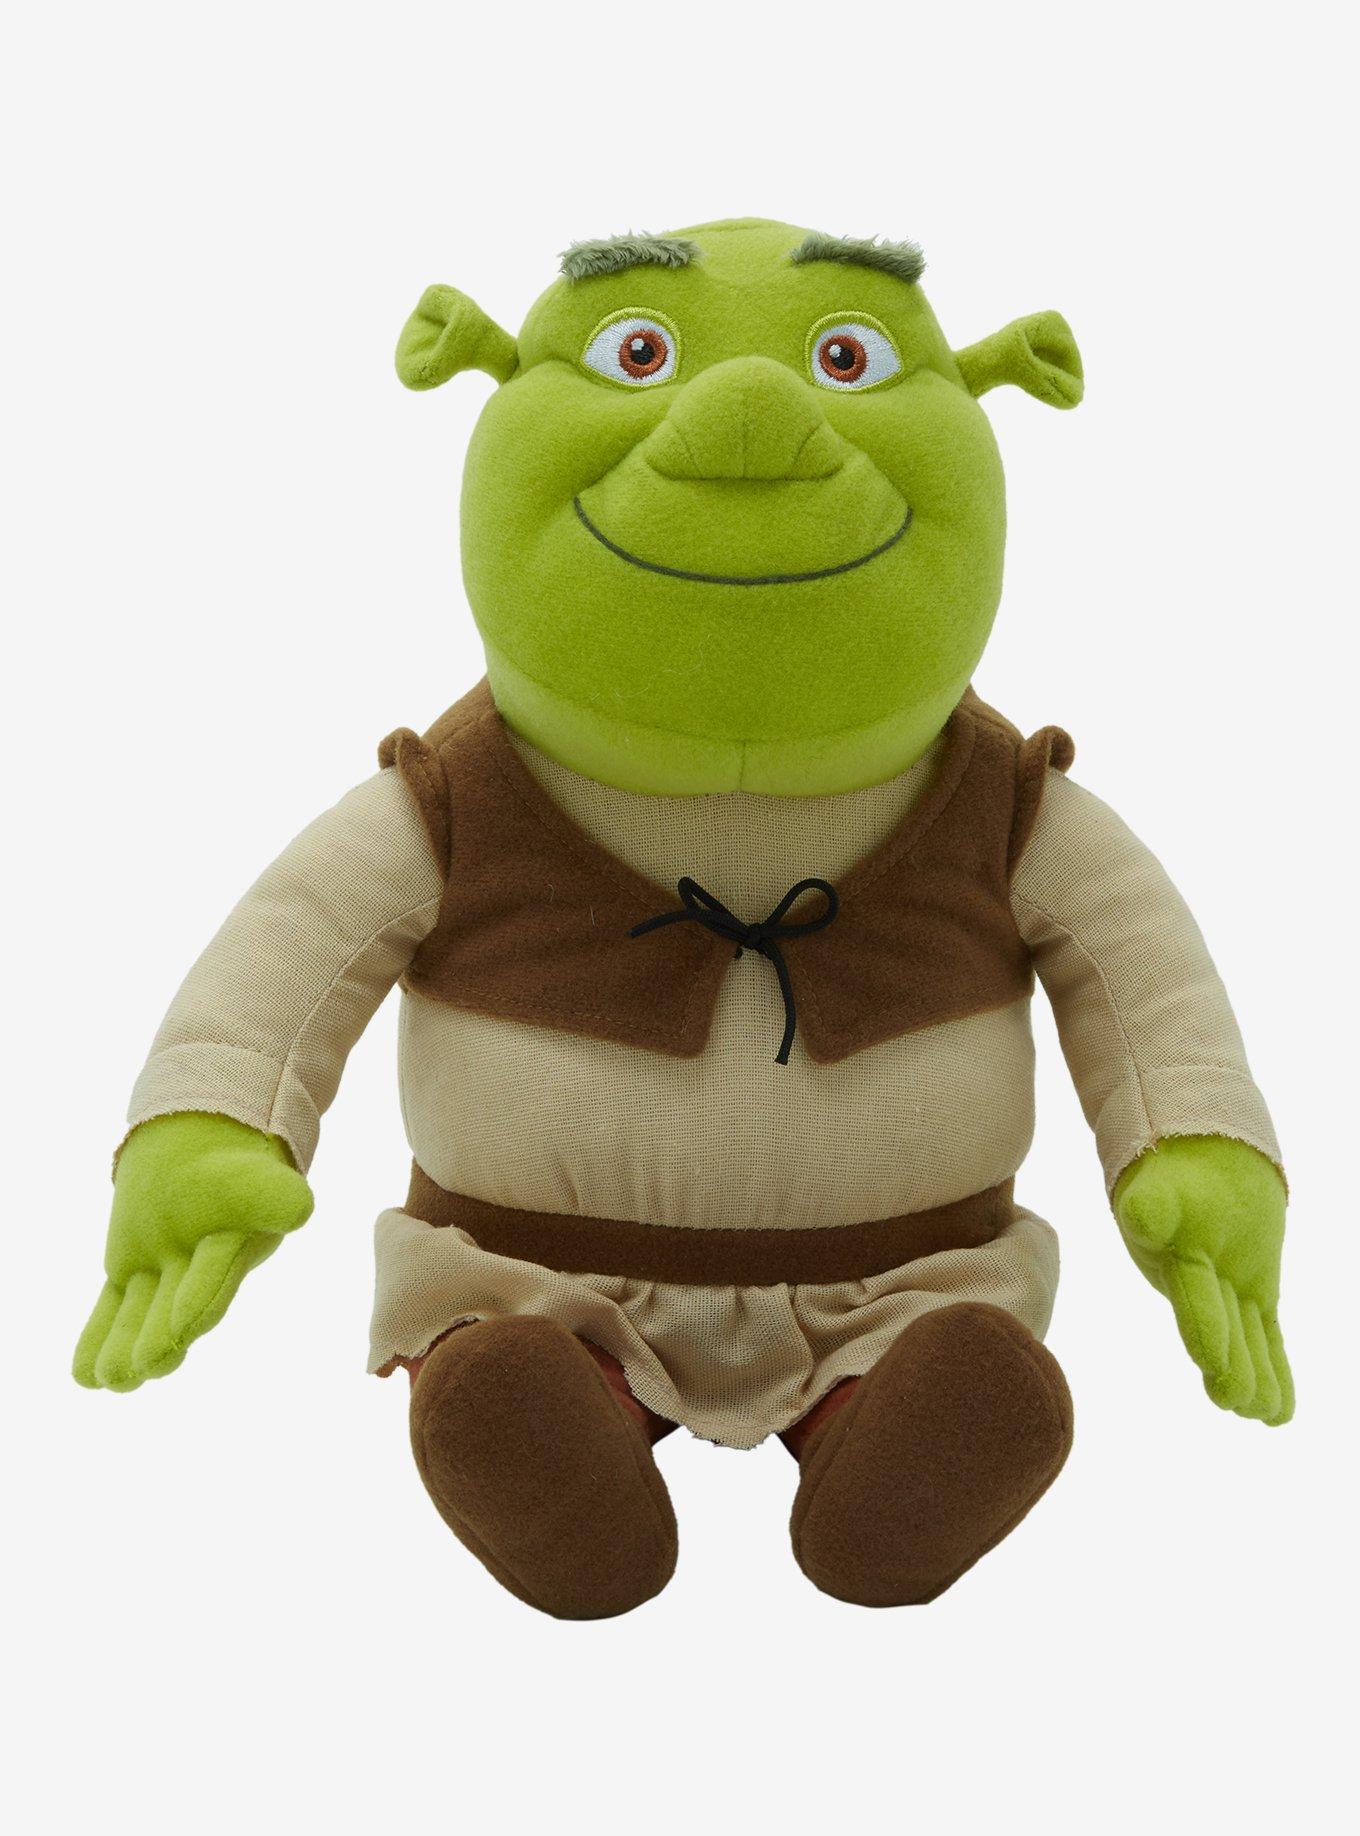 Shrek 10 Inch Plush Hot Topic